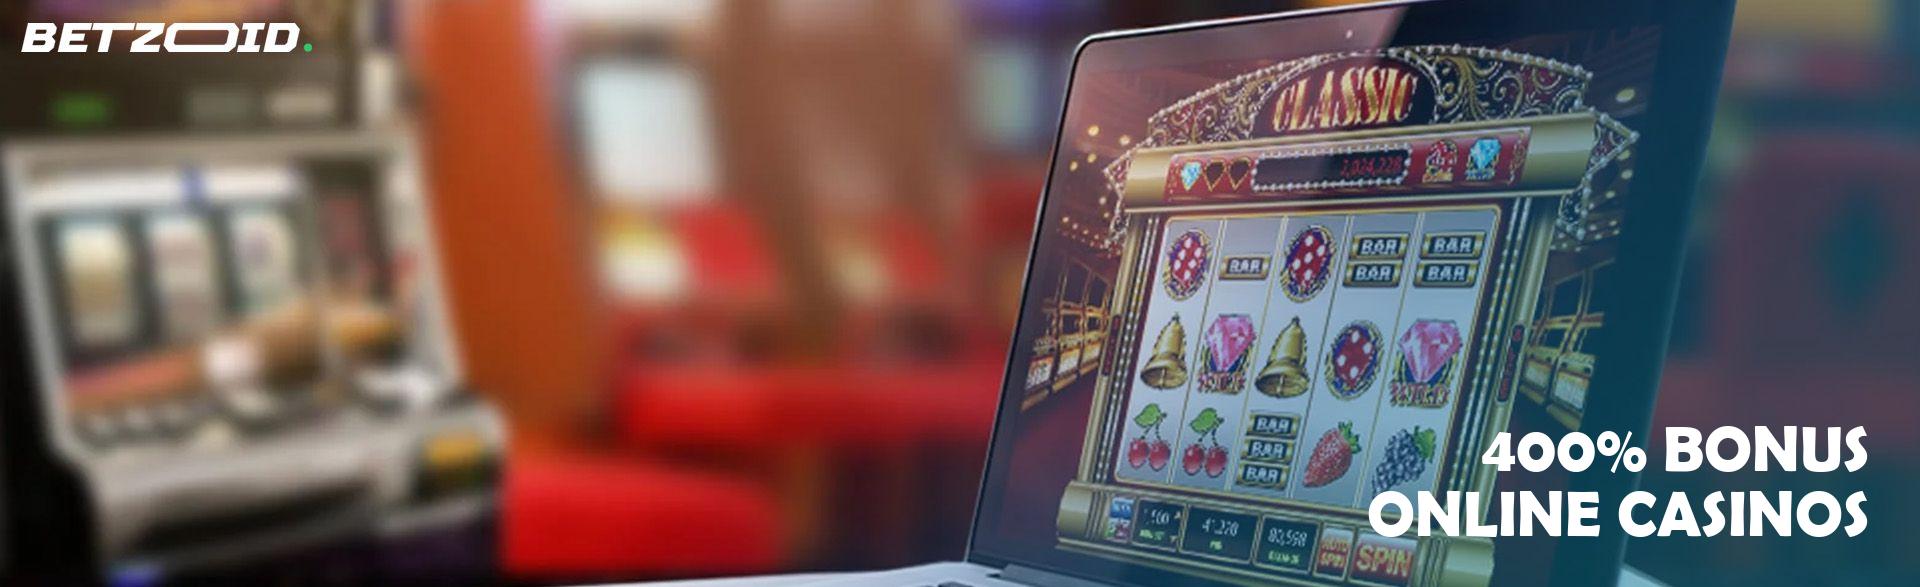 400% Bonus Online Casinos.